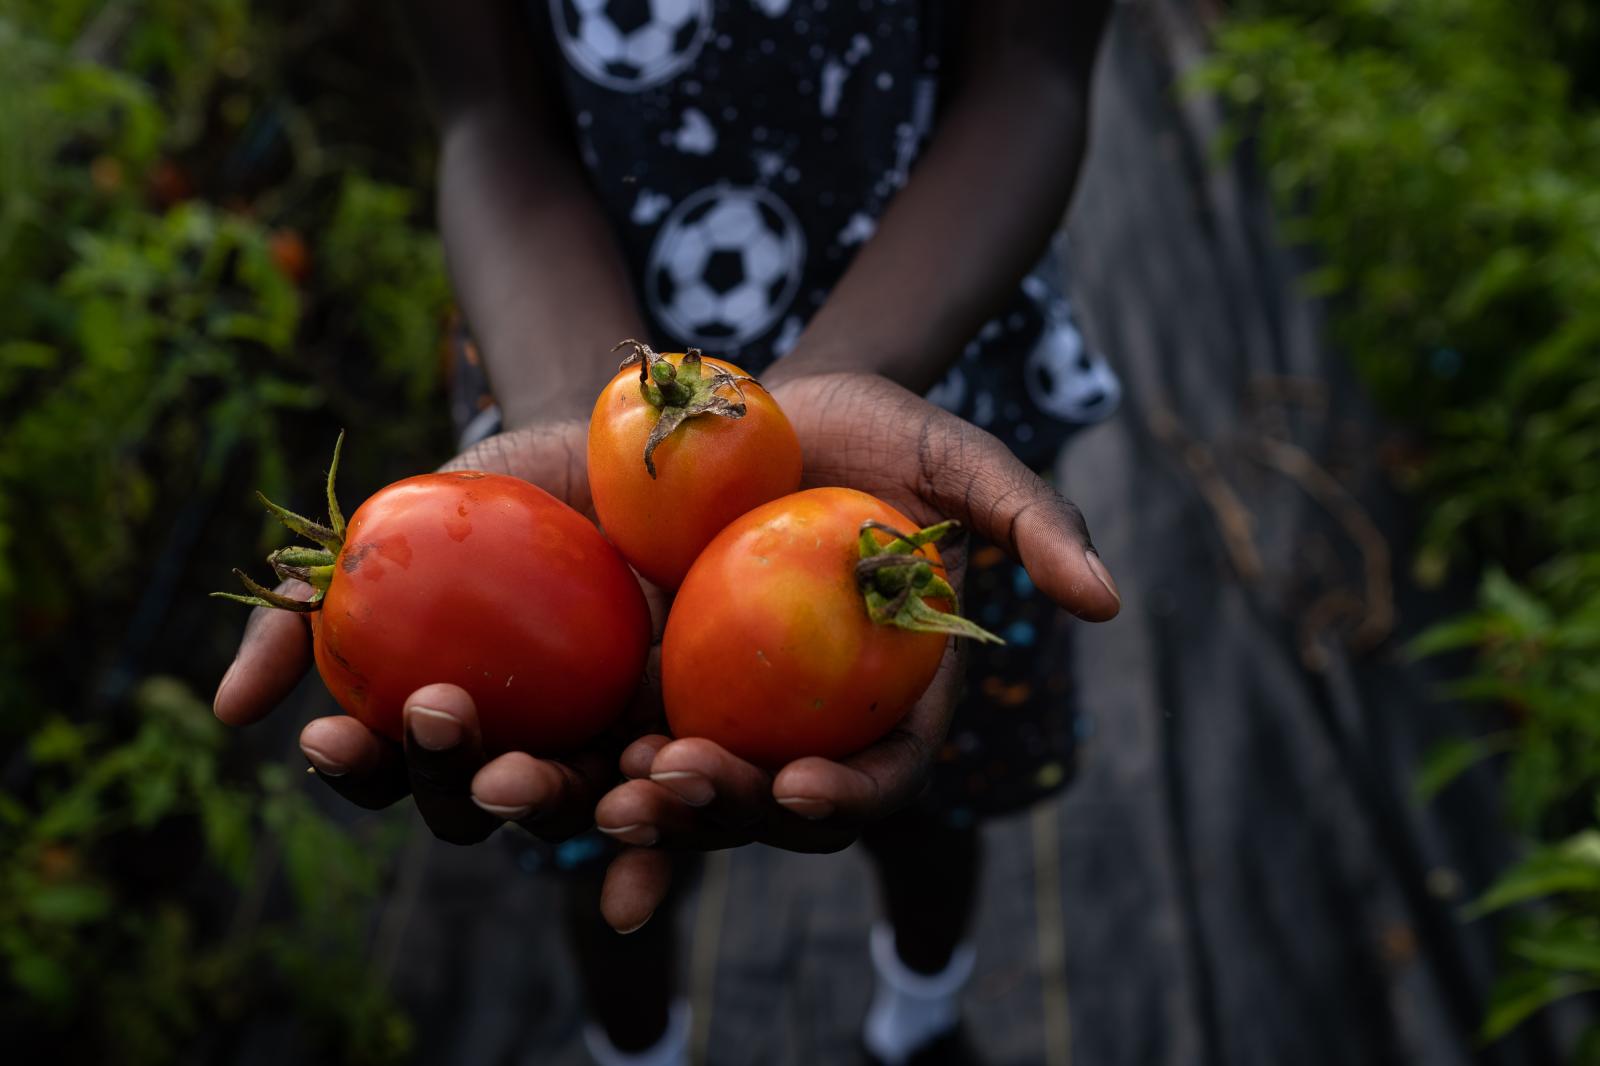 Image from Brady Family Farm - Freshly picked tomatoes from the Brady Family Farm....